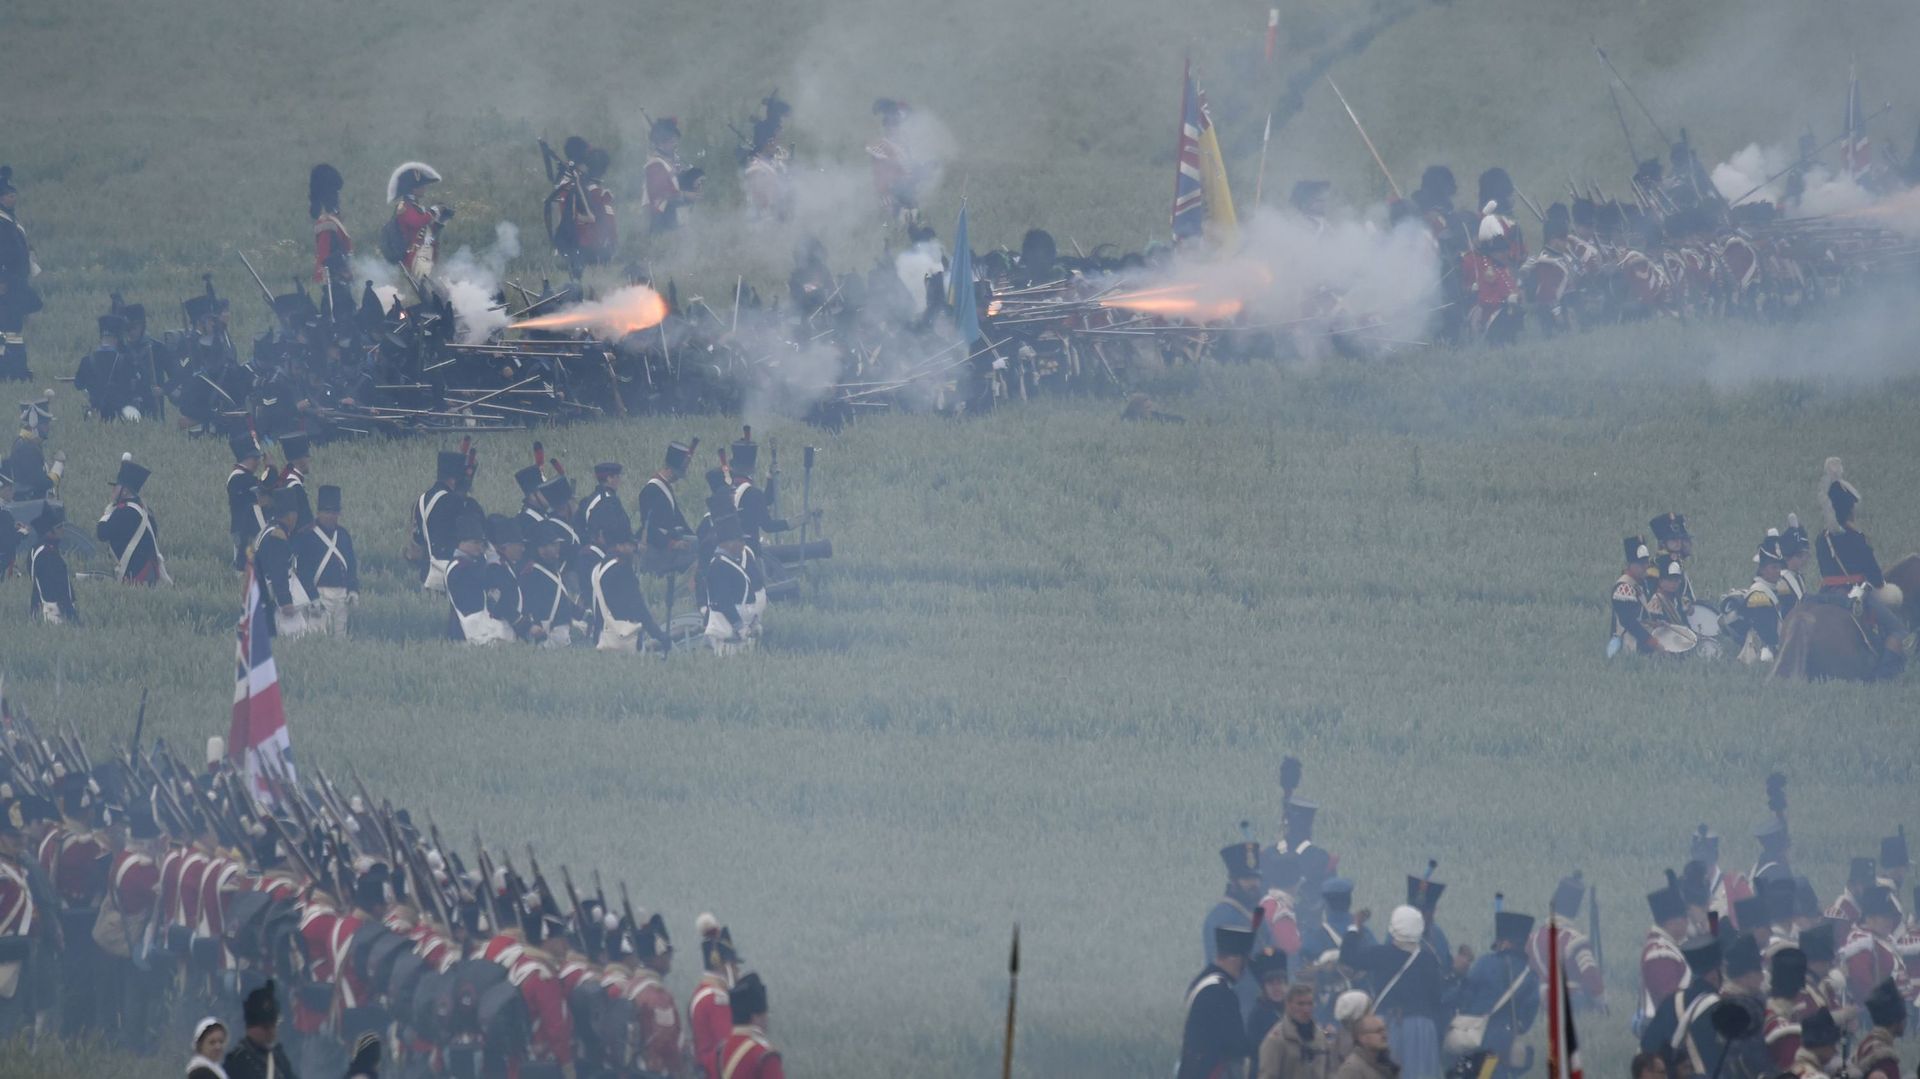 "Trop de fumée", "pas assez d'explications": la bataille de Waterloo a déçu certains